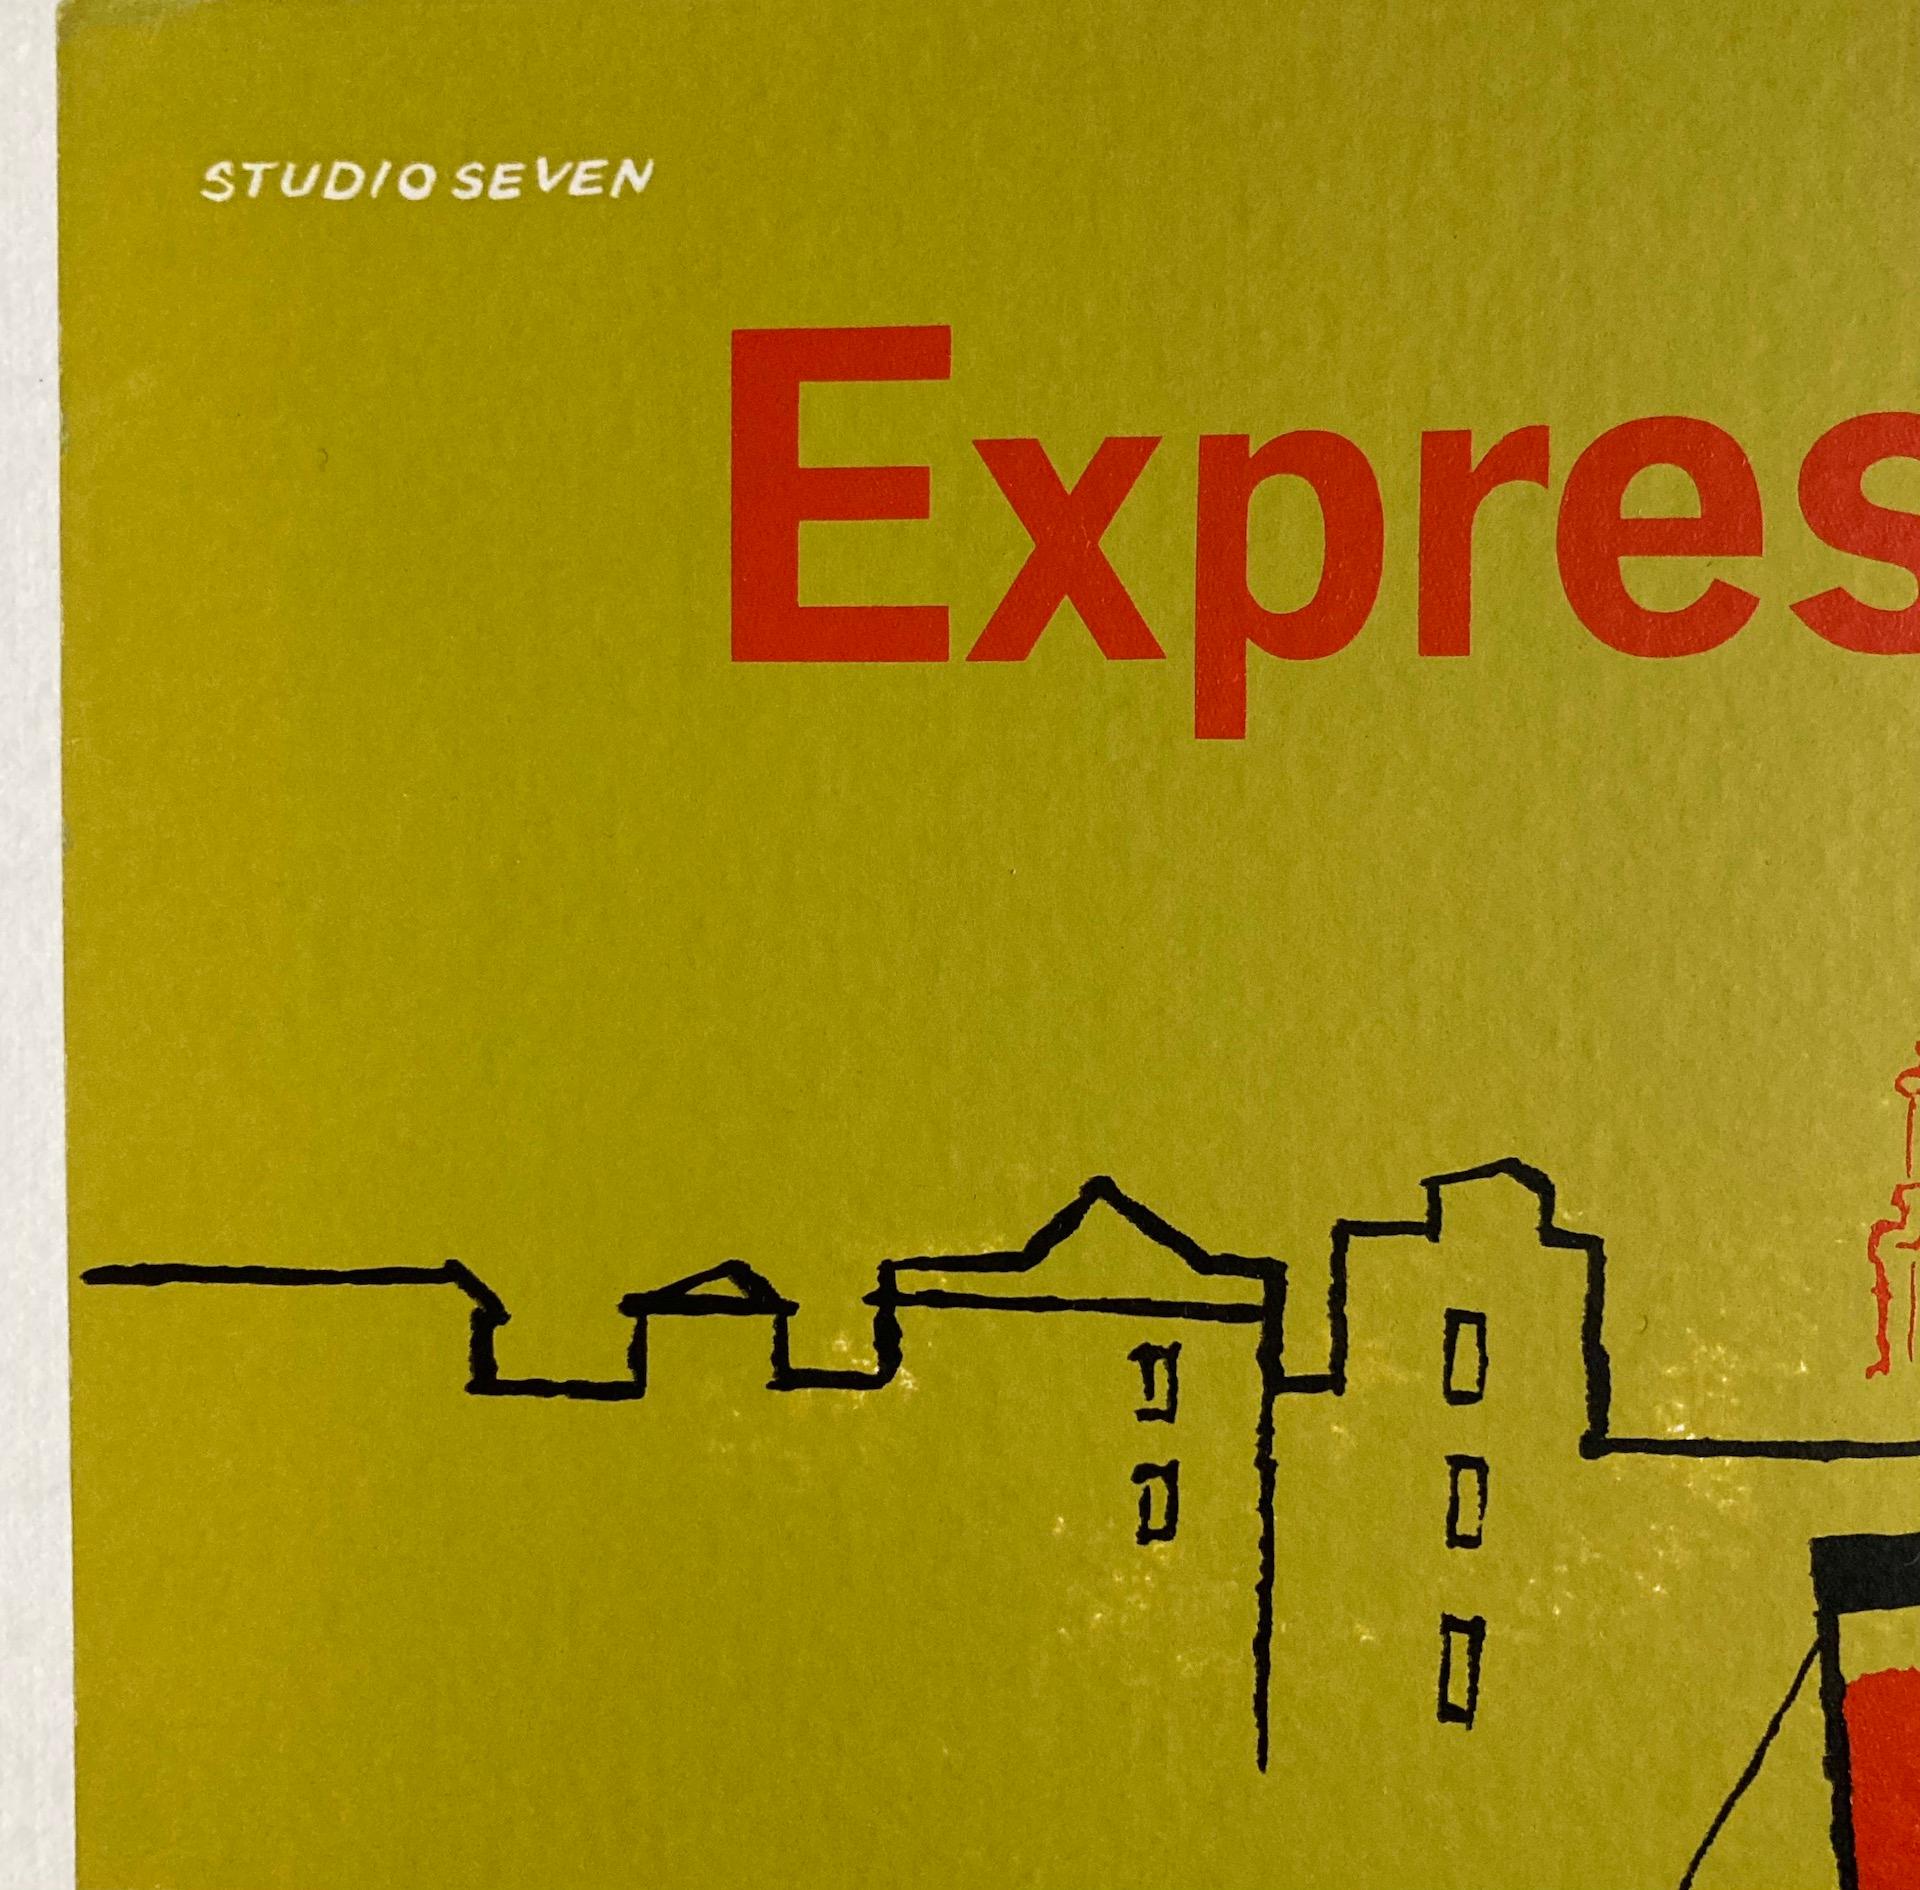 Cette petite affiche anglaise originale des années 1960, réalisée par le Studio Seven, fait la publicité des services routiers express vers Londres. Il s'agit d'un poster rare, qui aurait été affiché dans les bureaux de voyage ou dans les bus et les